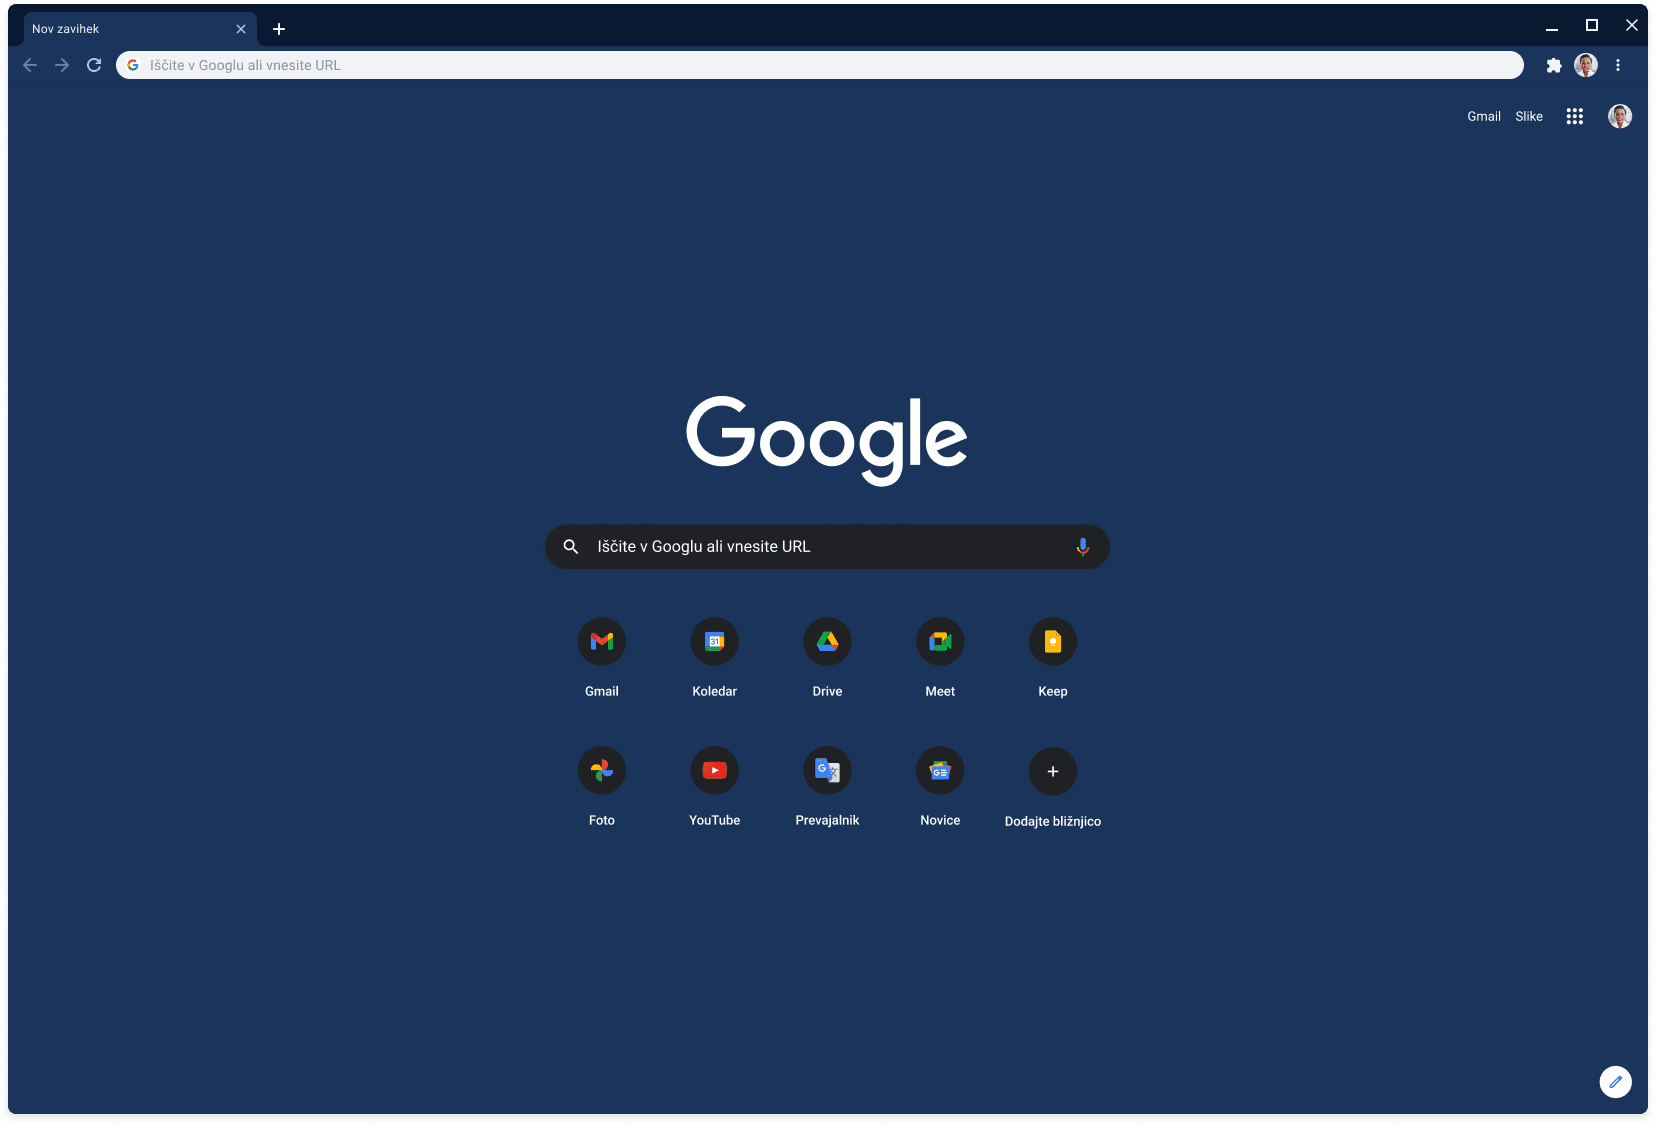 V oknu brskalnika Chrome je prikazan naslov Google.com, pri tem je uporabljena skrilasto modra tema.